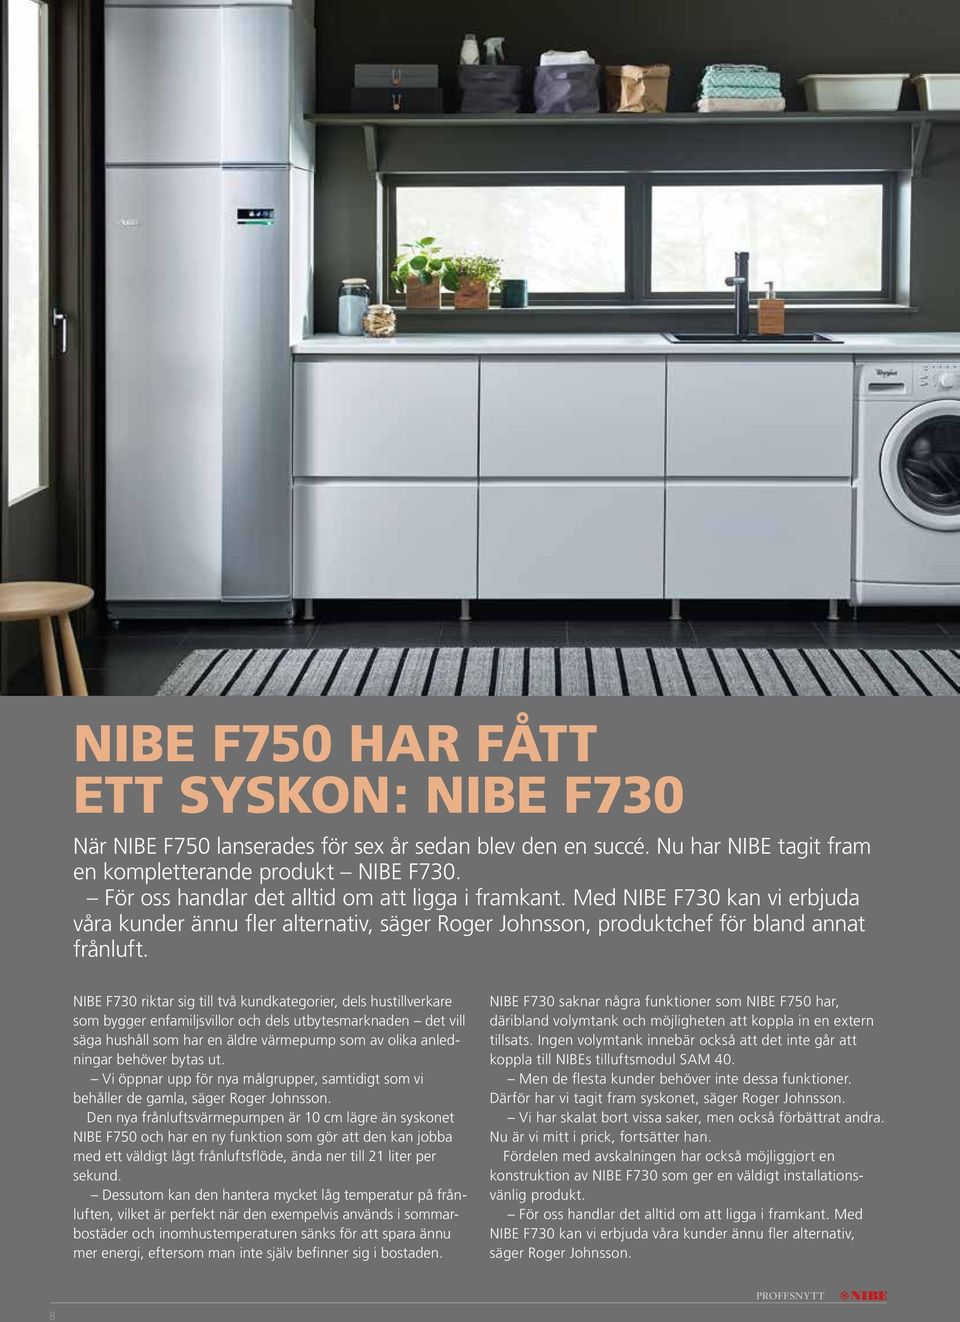 NIBE F730 riktar sig till två kundkategorier, dels hustillverkare som bygger enfamiljsvillor och dels utbytesmarknaden det vill säga hushåll som har en äldre värmepump som av olika anledningar